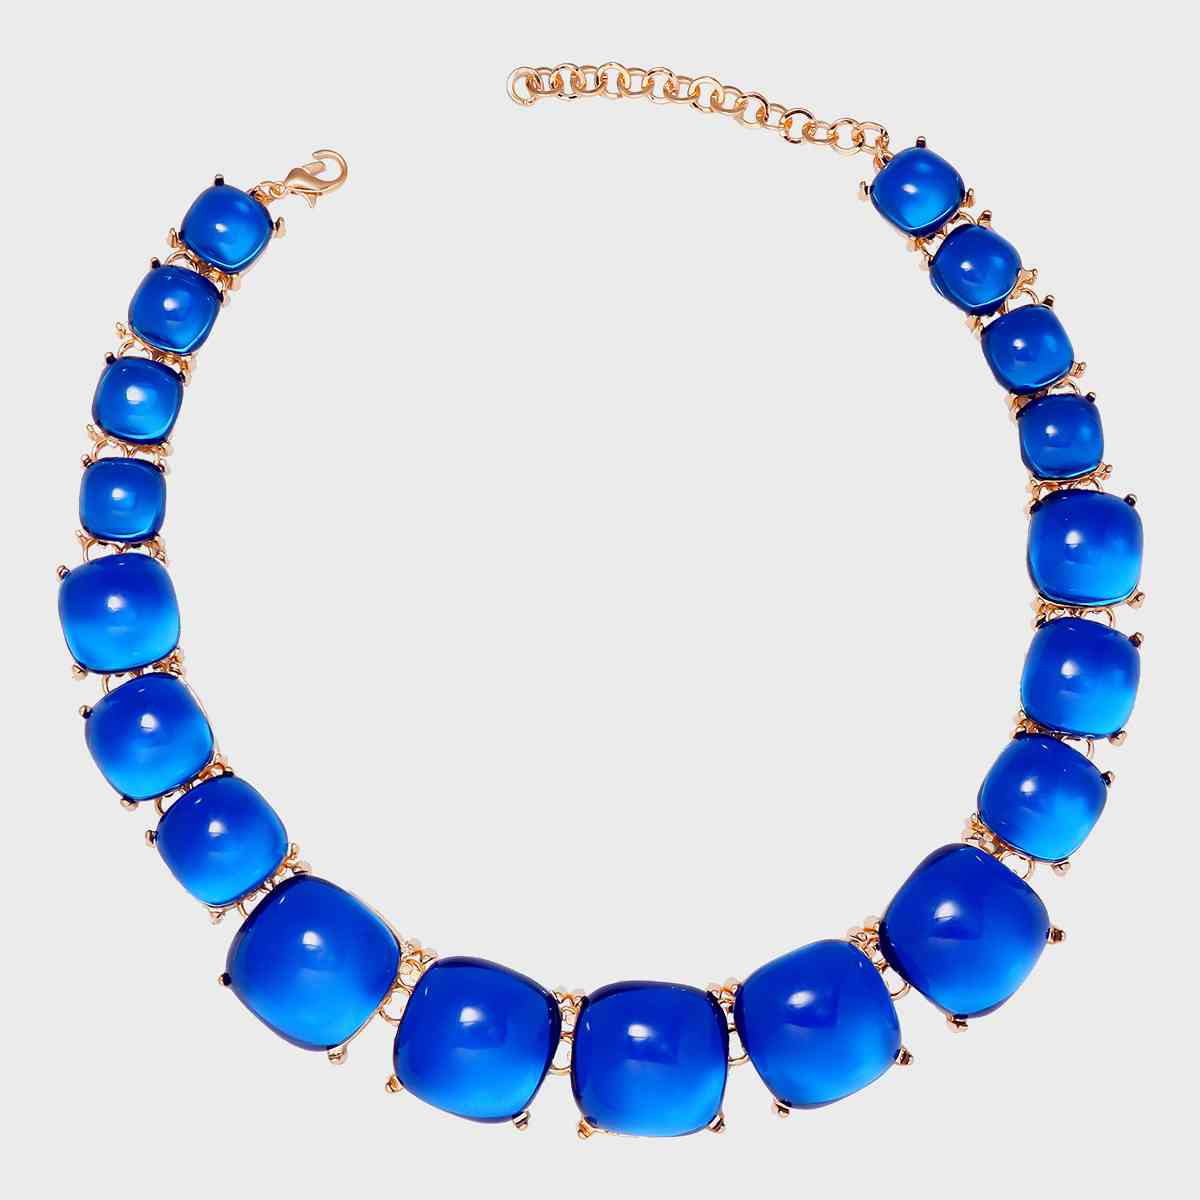 Alloy & Rhinestone Necklace Royal Blue One Size